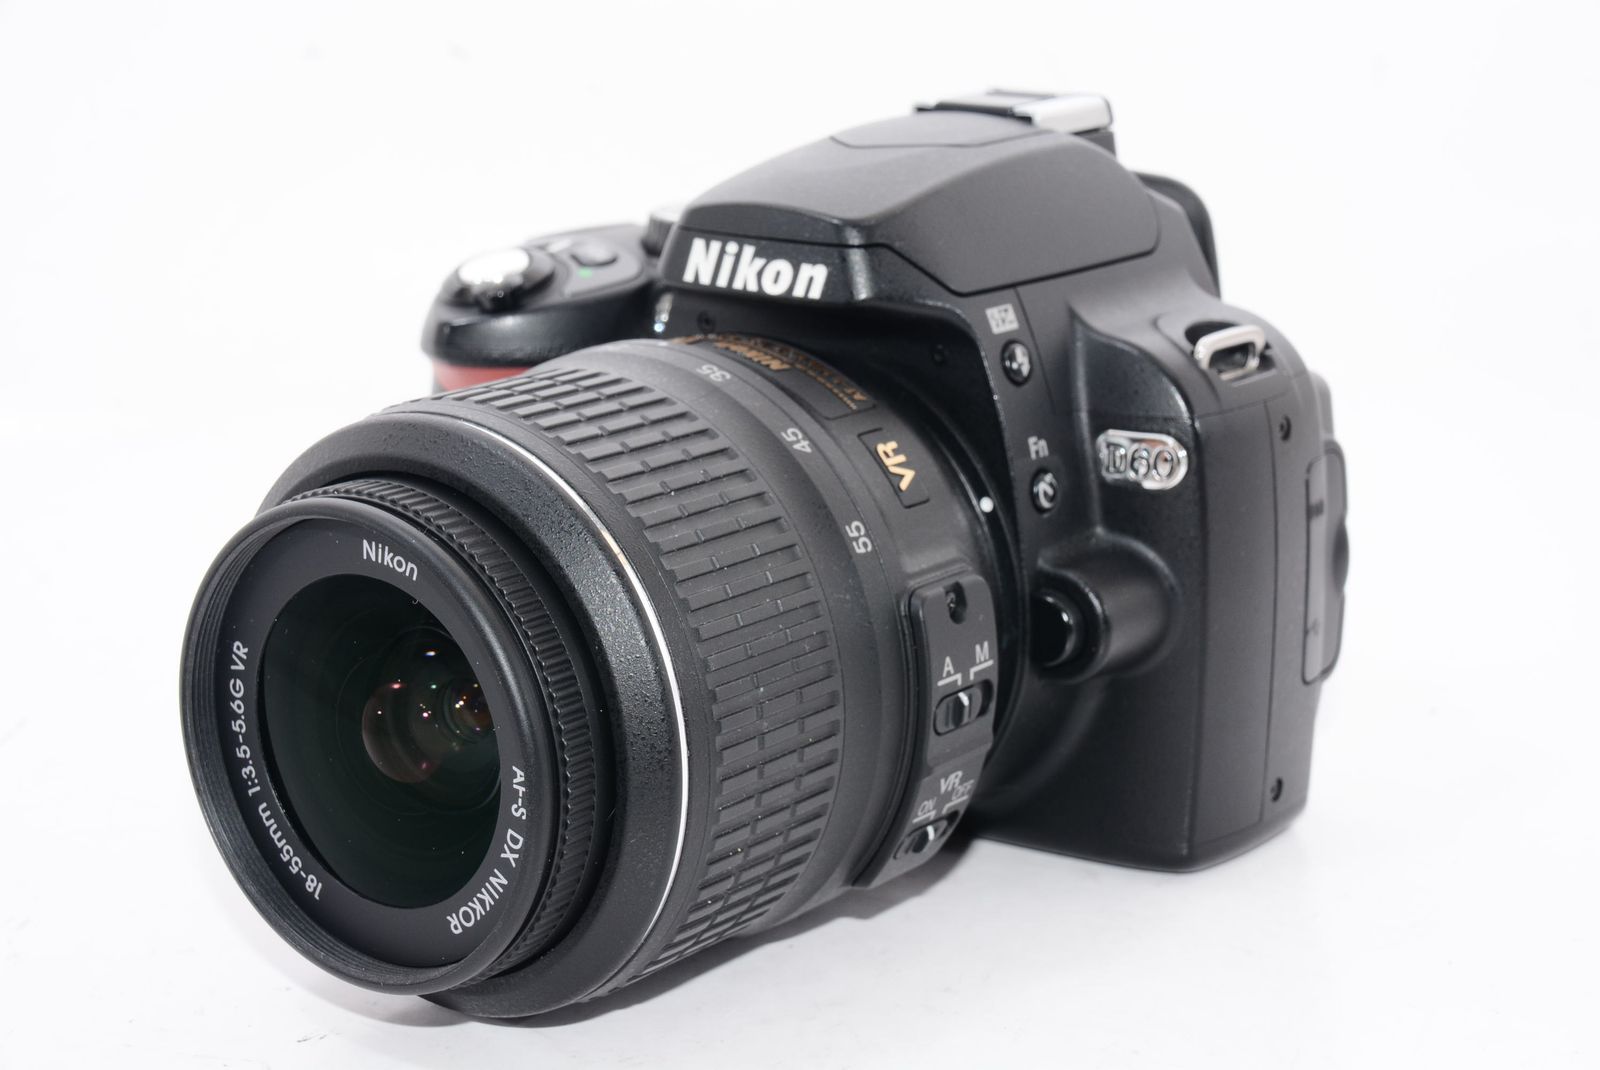 外観特上級】Nikon デジタルカメラ D60 レンズキット D60LK 百獣の買取王カメライオン メルカリ